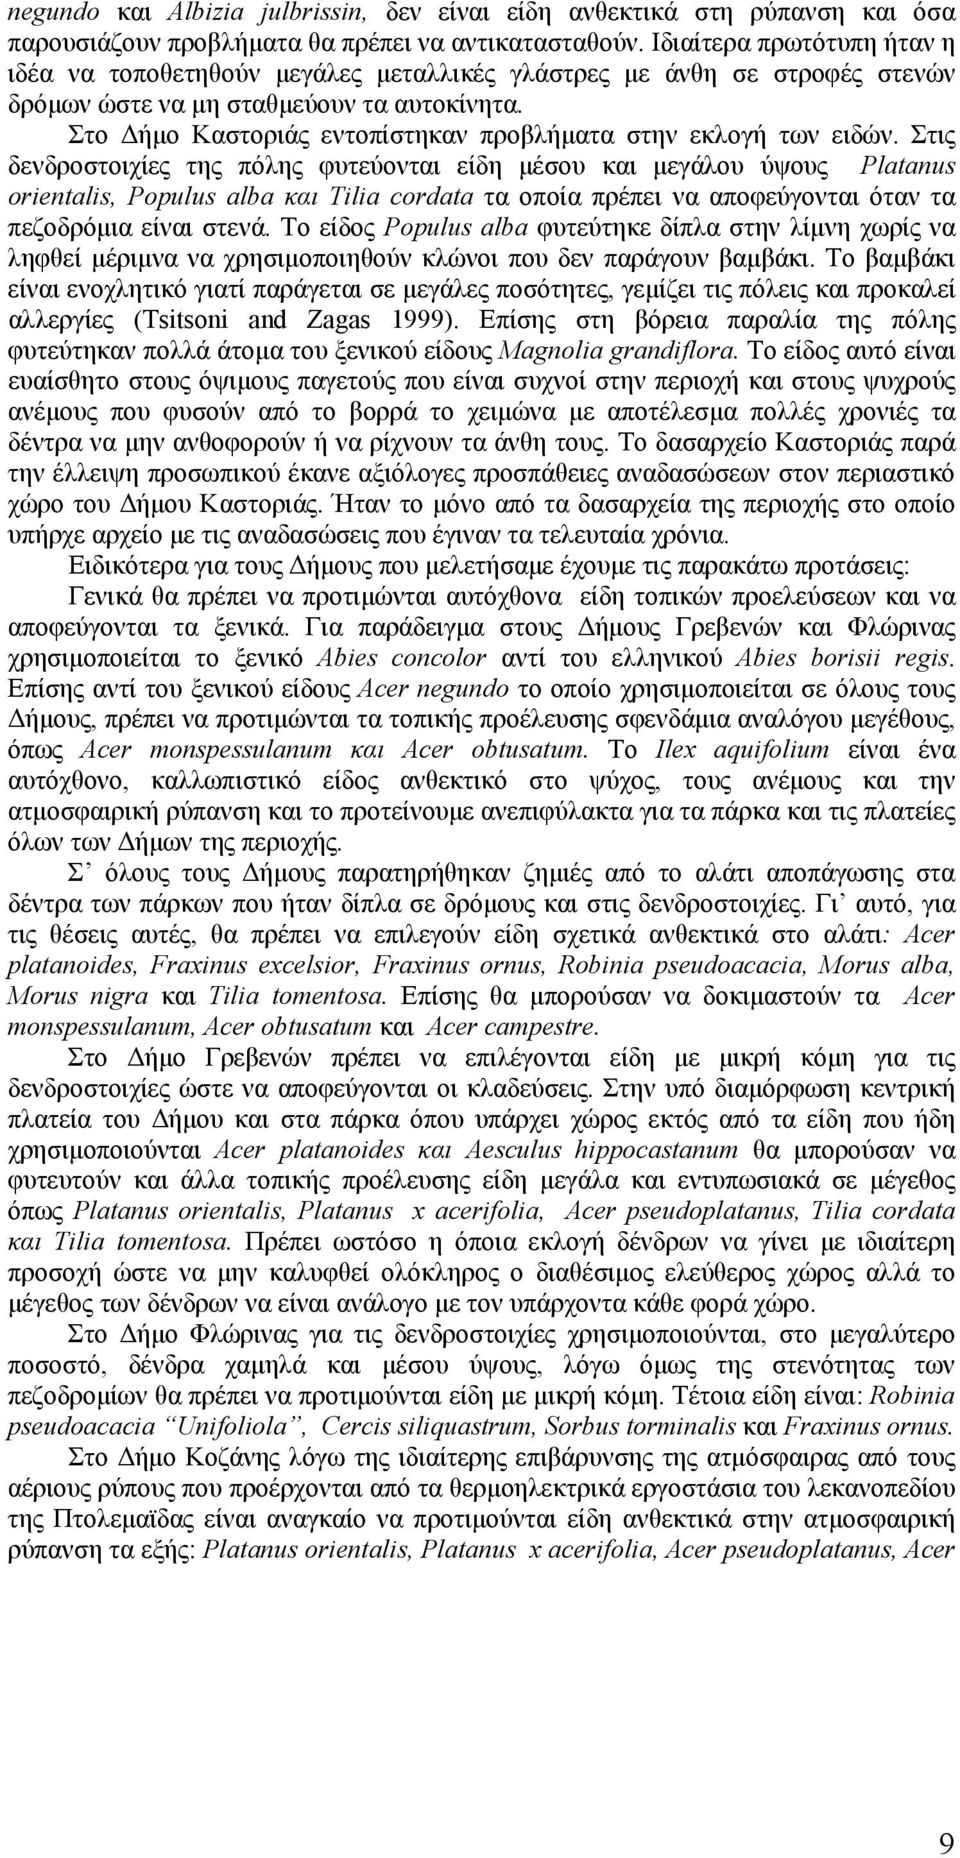 Στο Δήμο Καστοριάς εντοπίστηκαν προβλήματα στην εκλογή των ειδών.